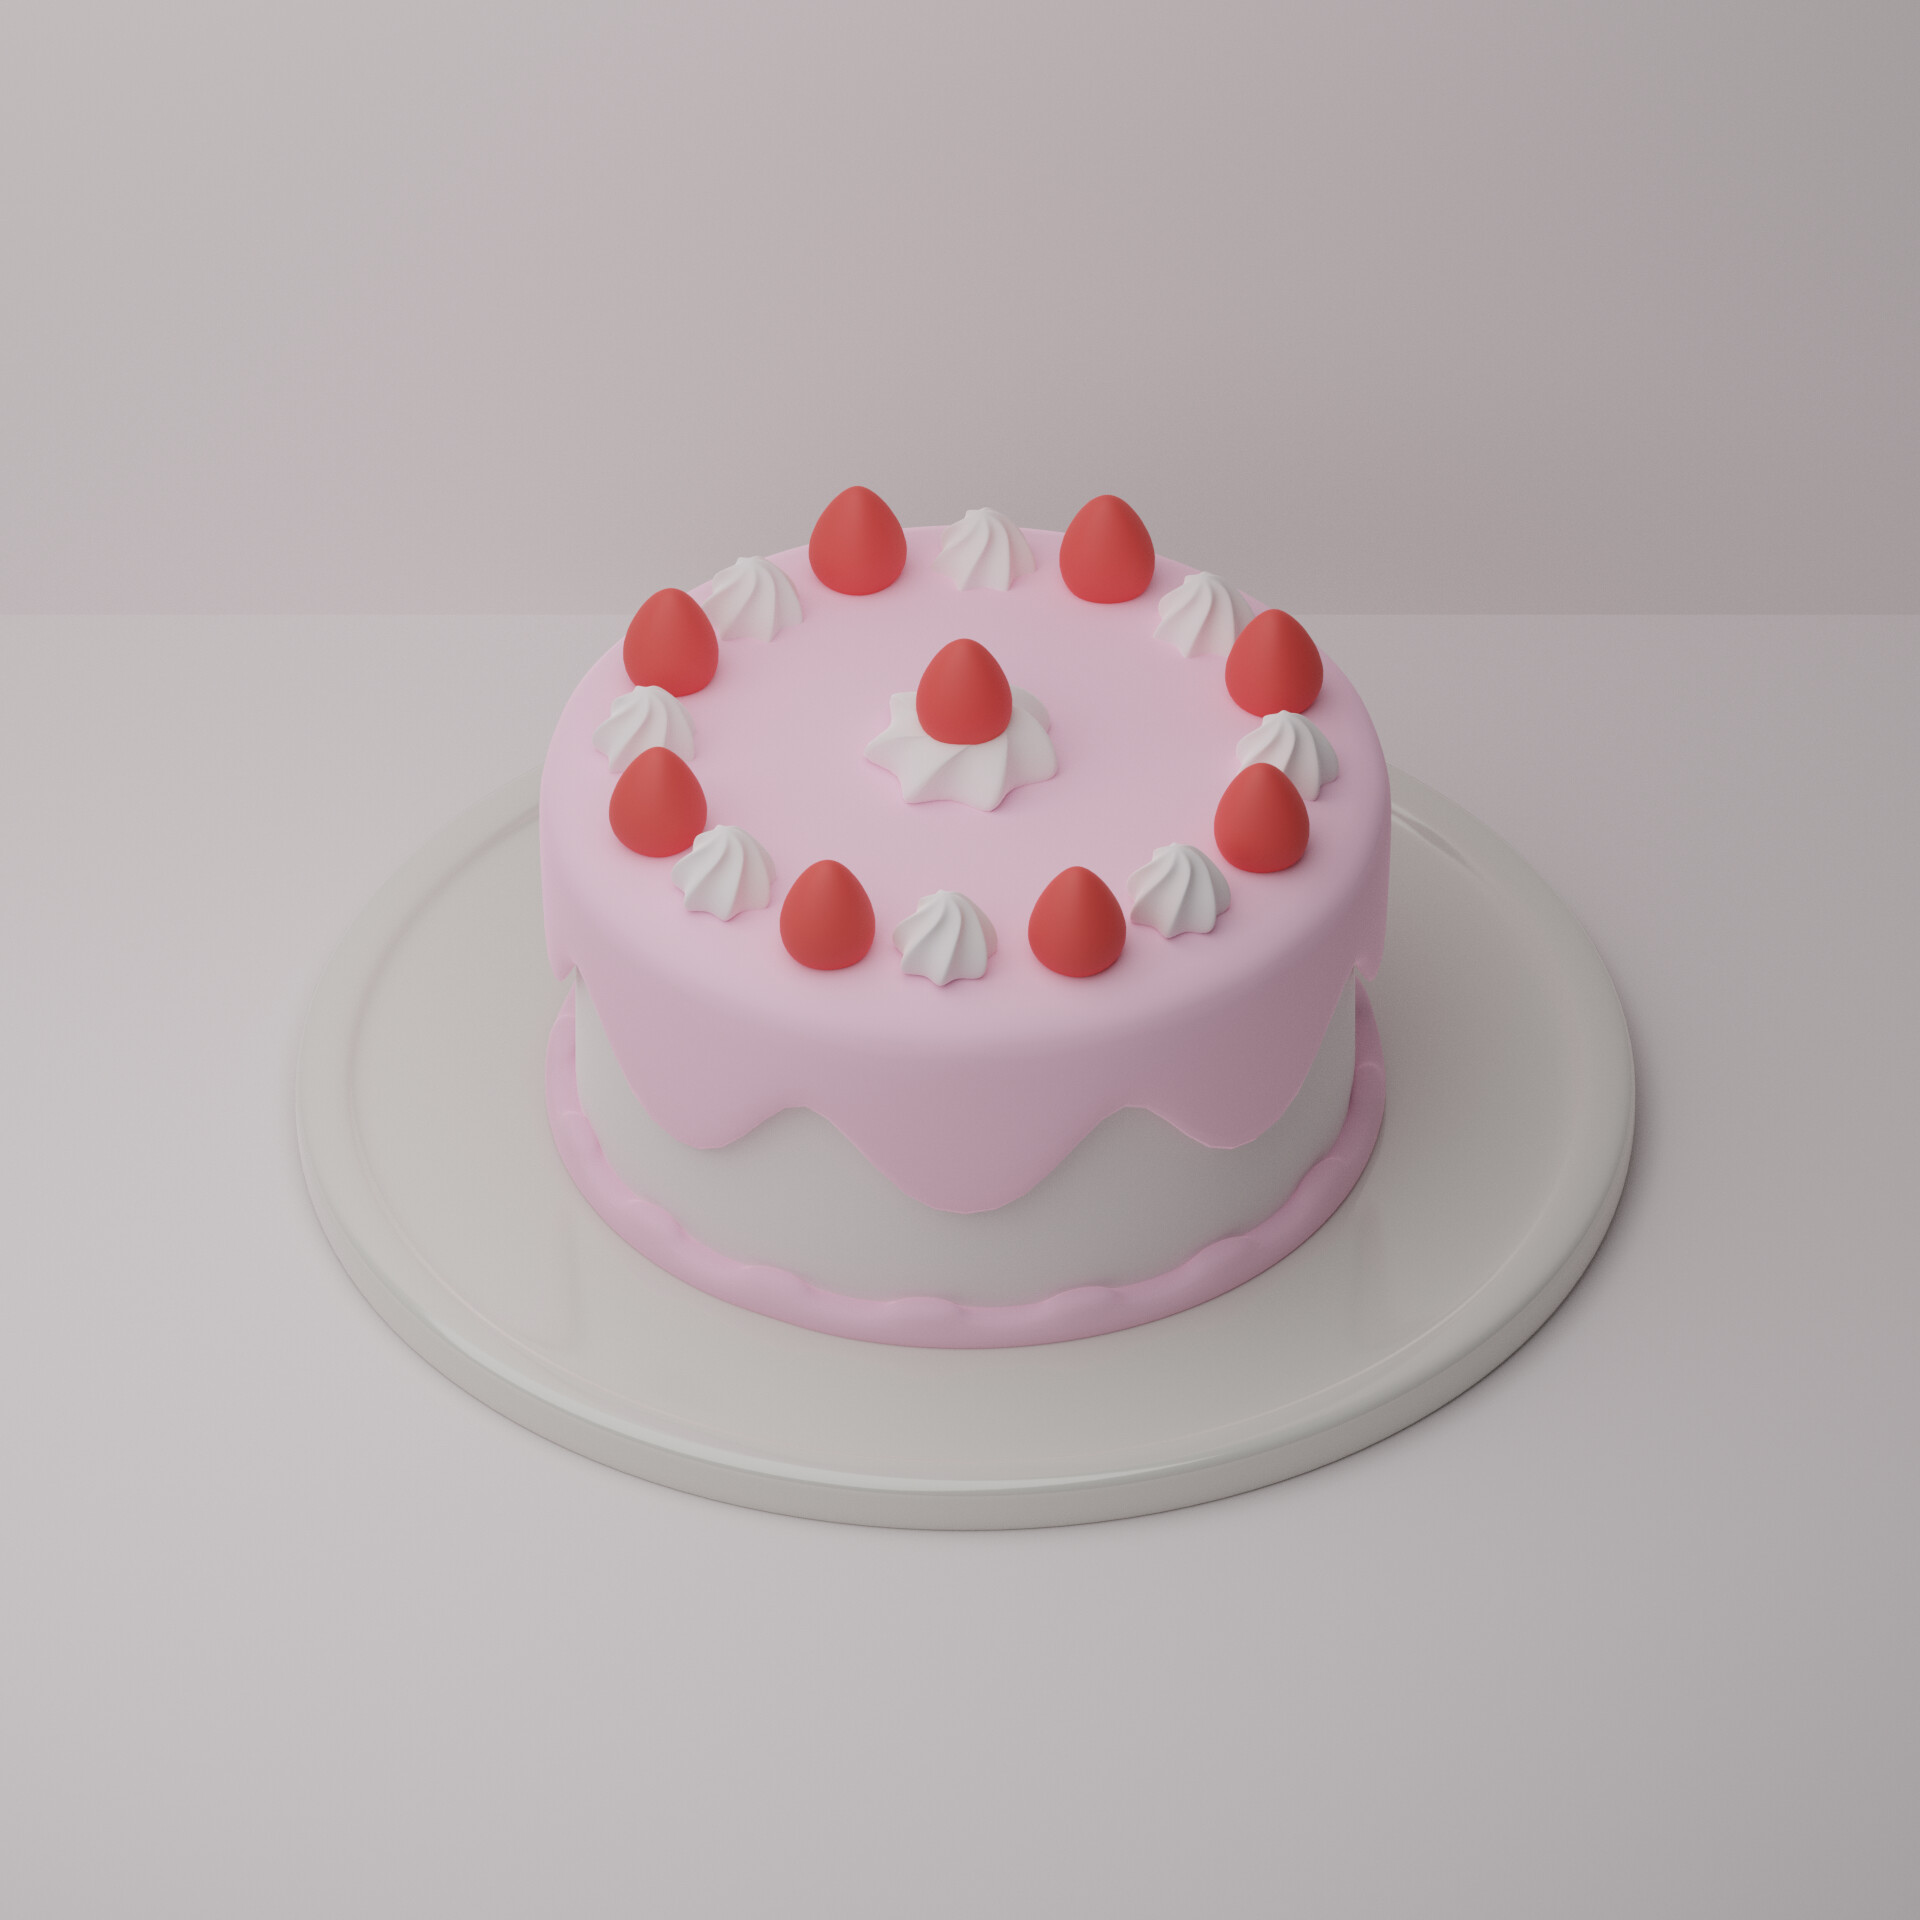 ArtStation - Strawberry cake